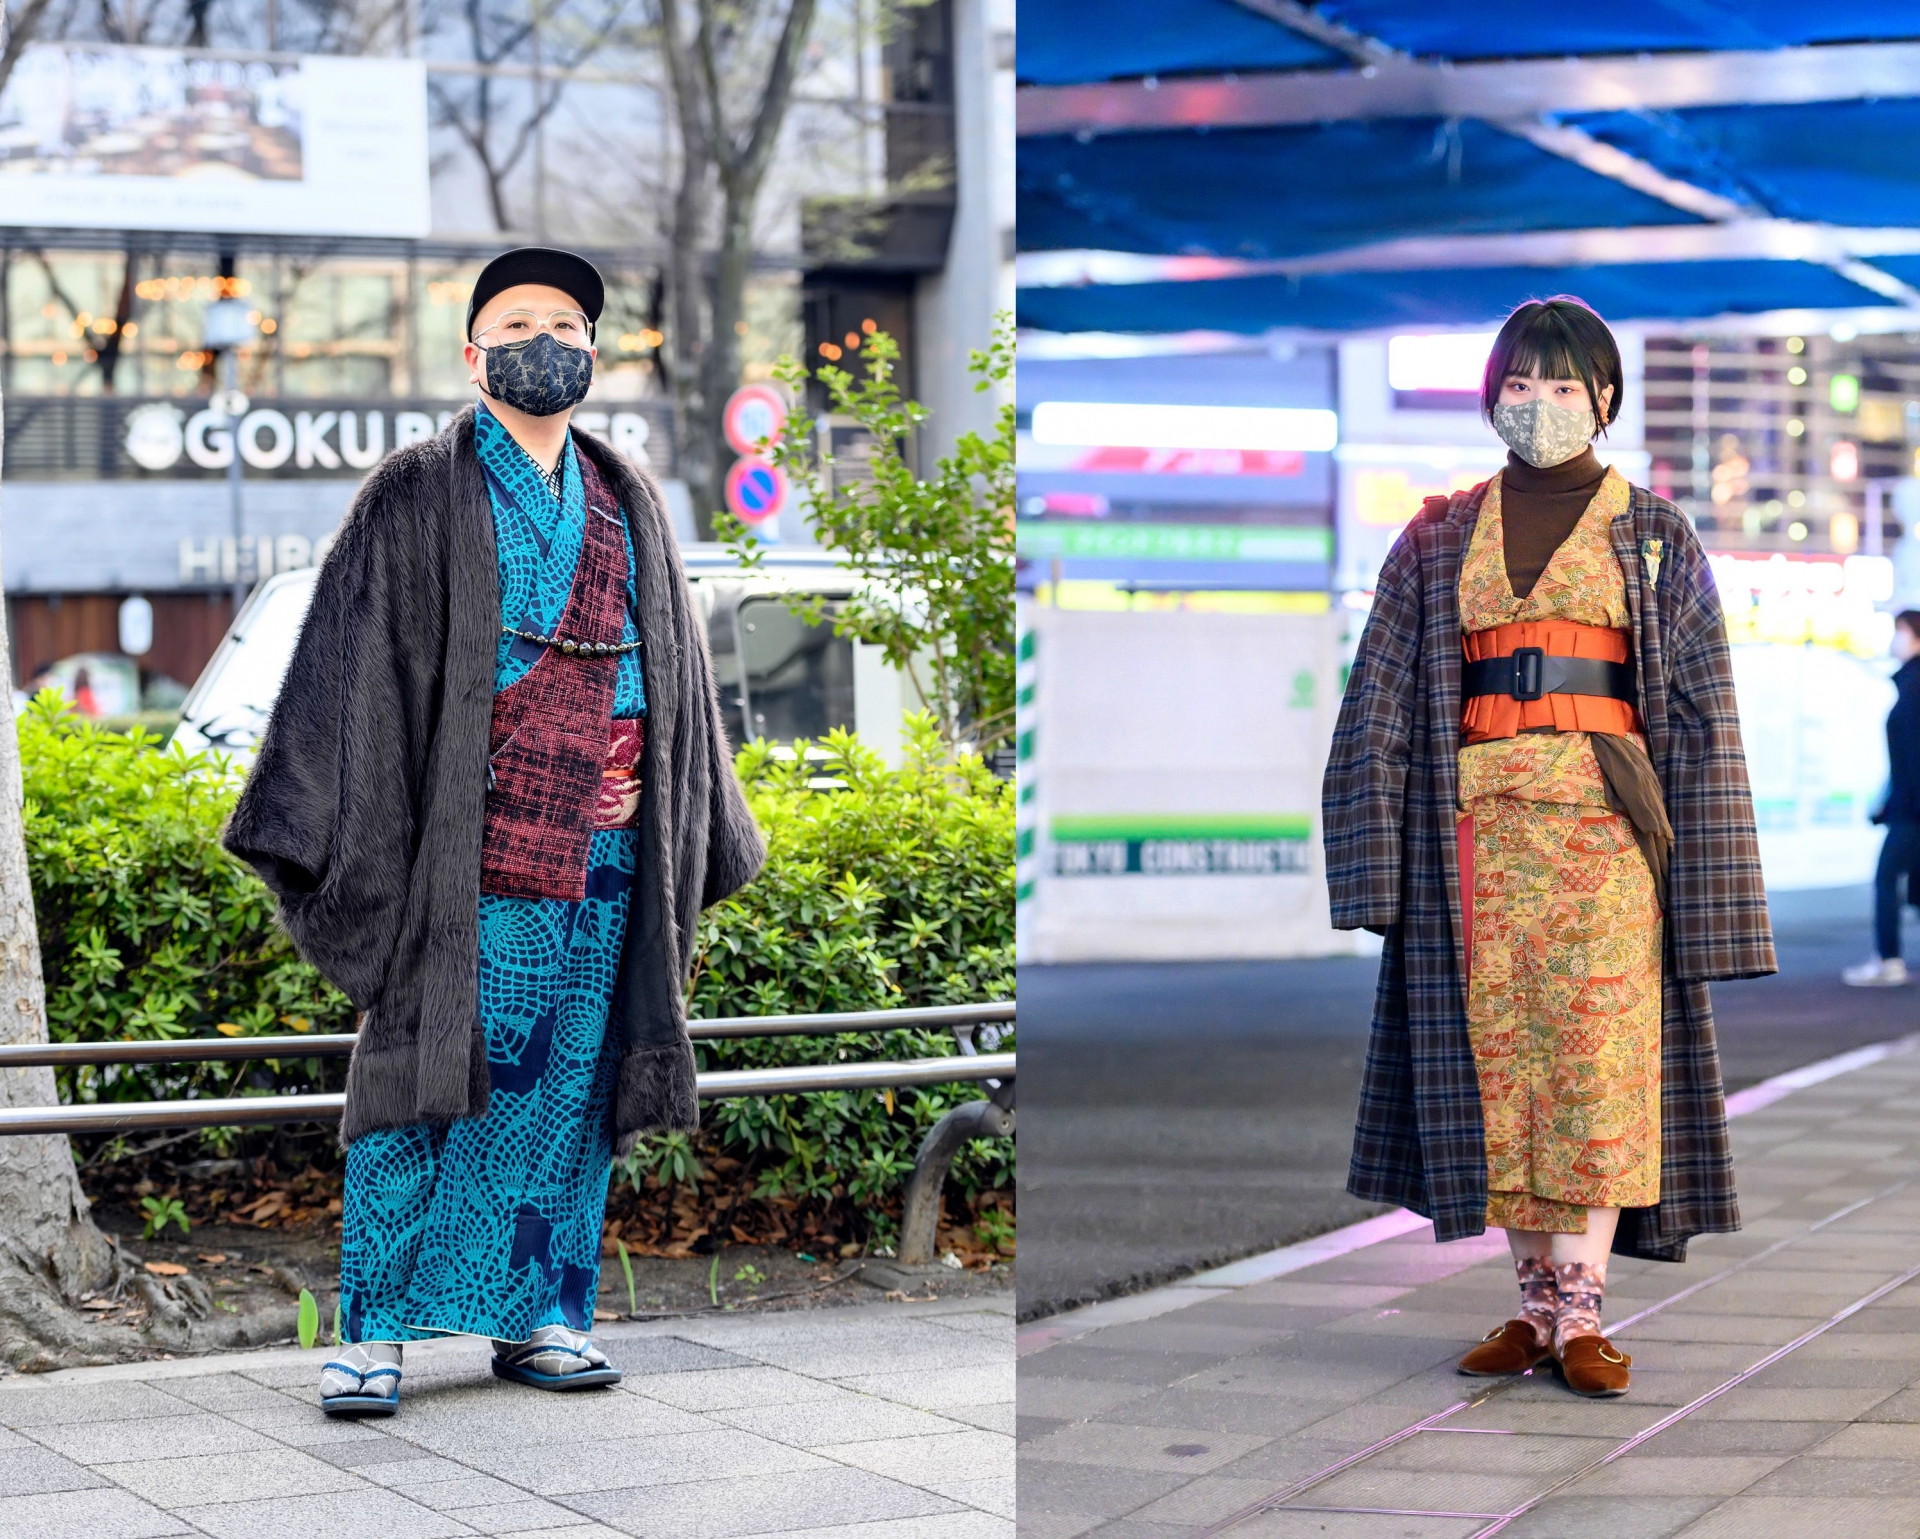 Trang phục truyền thống kimono được bắt gặp ở cả nam và nữ trên đường phố Nhật Bản. Hoạ tiết hoa lá sặc sỡ, sử dụng những gam màu nóng, nổi bật luôn là thế mạnh của tinh thần thời trang giới trẻ Nhật.